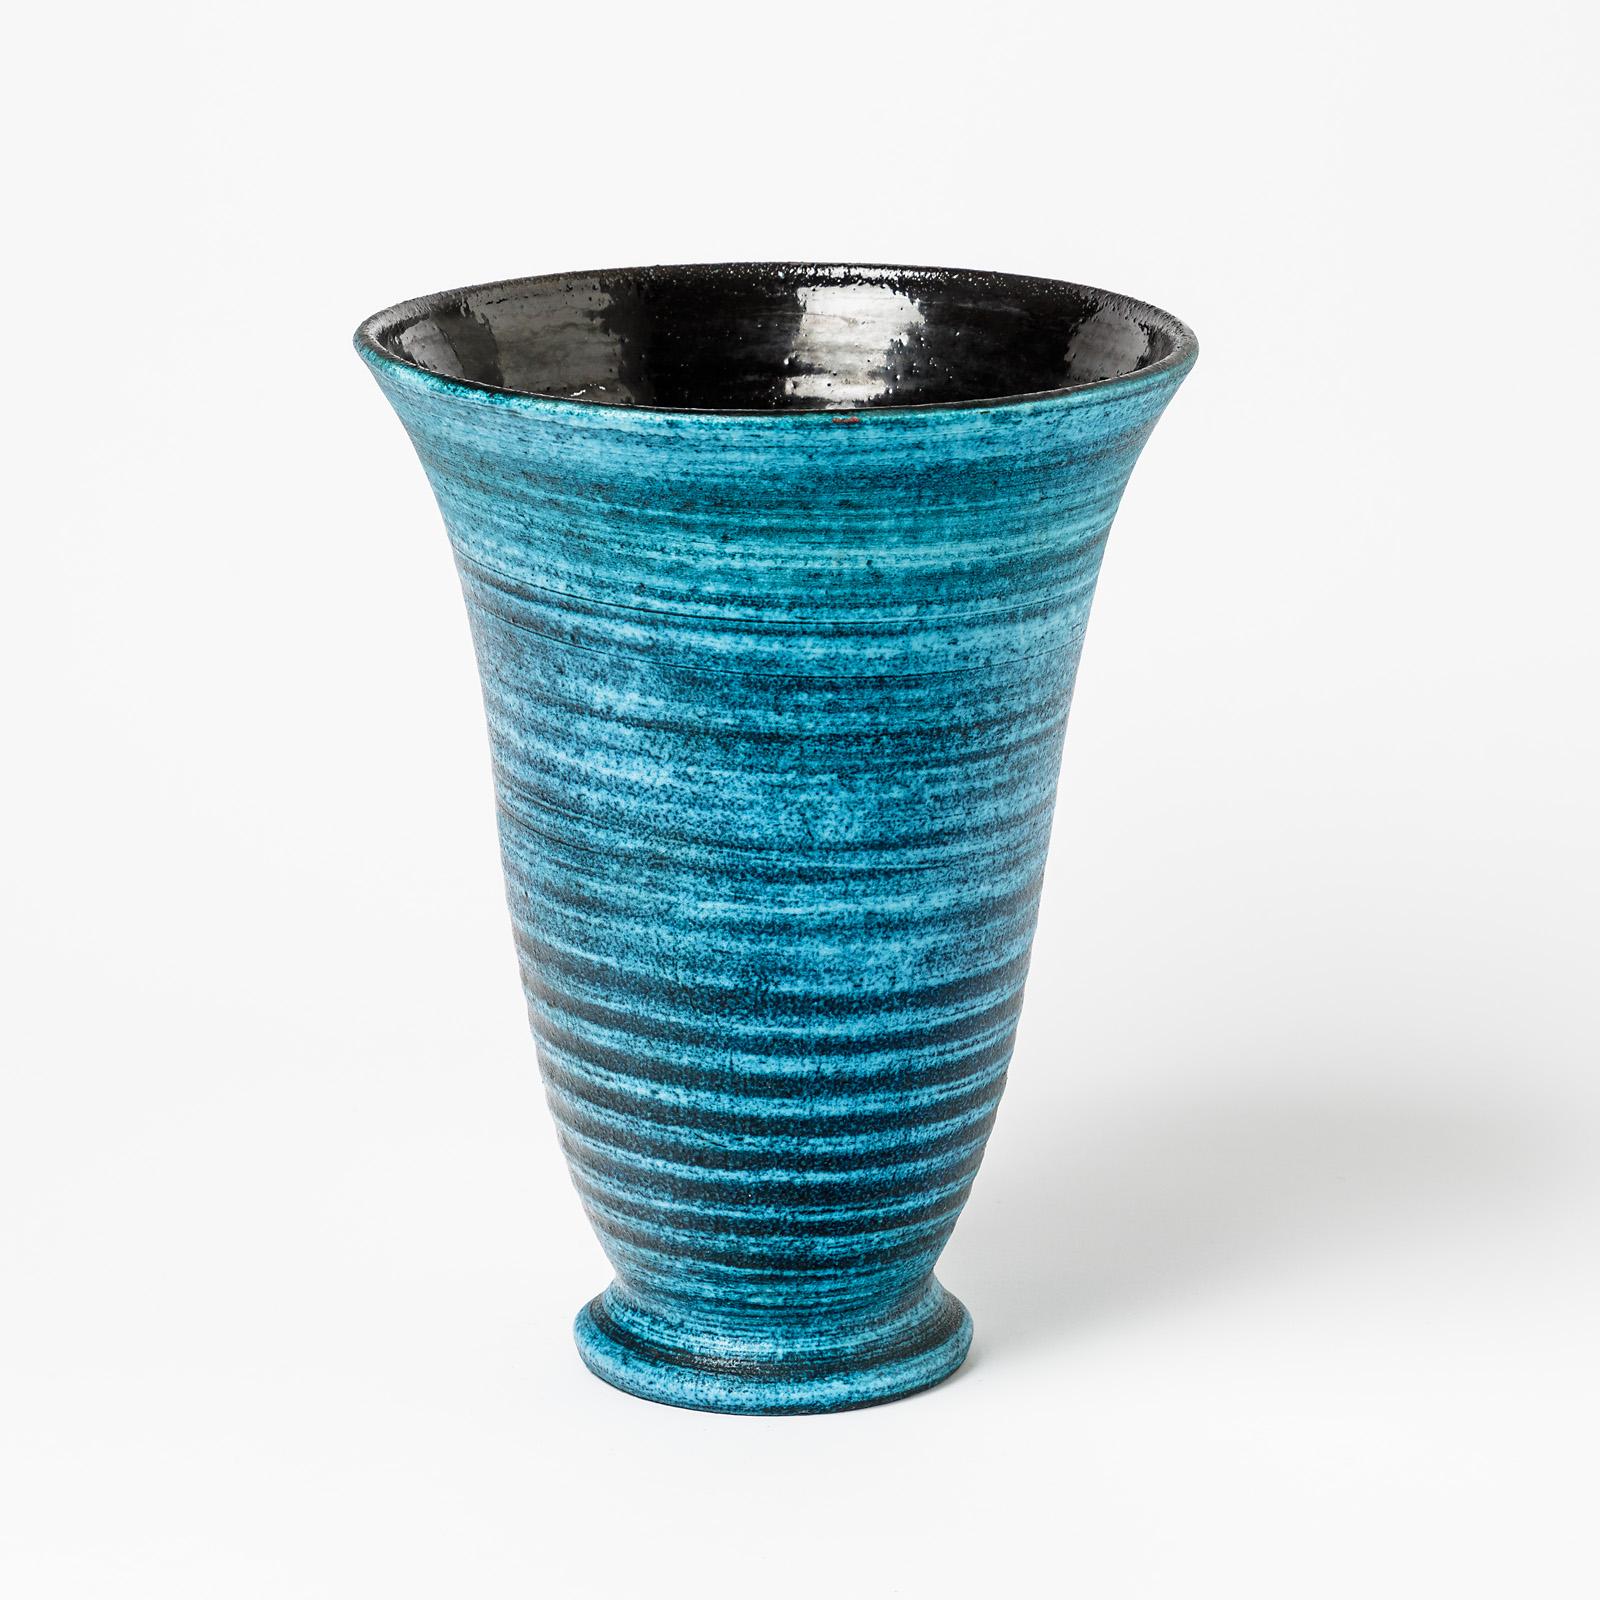 Un vase en céramique à décor de glaçure bleue par Accolay.
Conditions d'origine parfaites.
Signé 